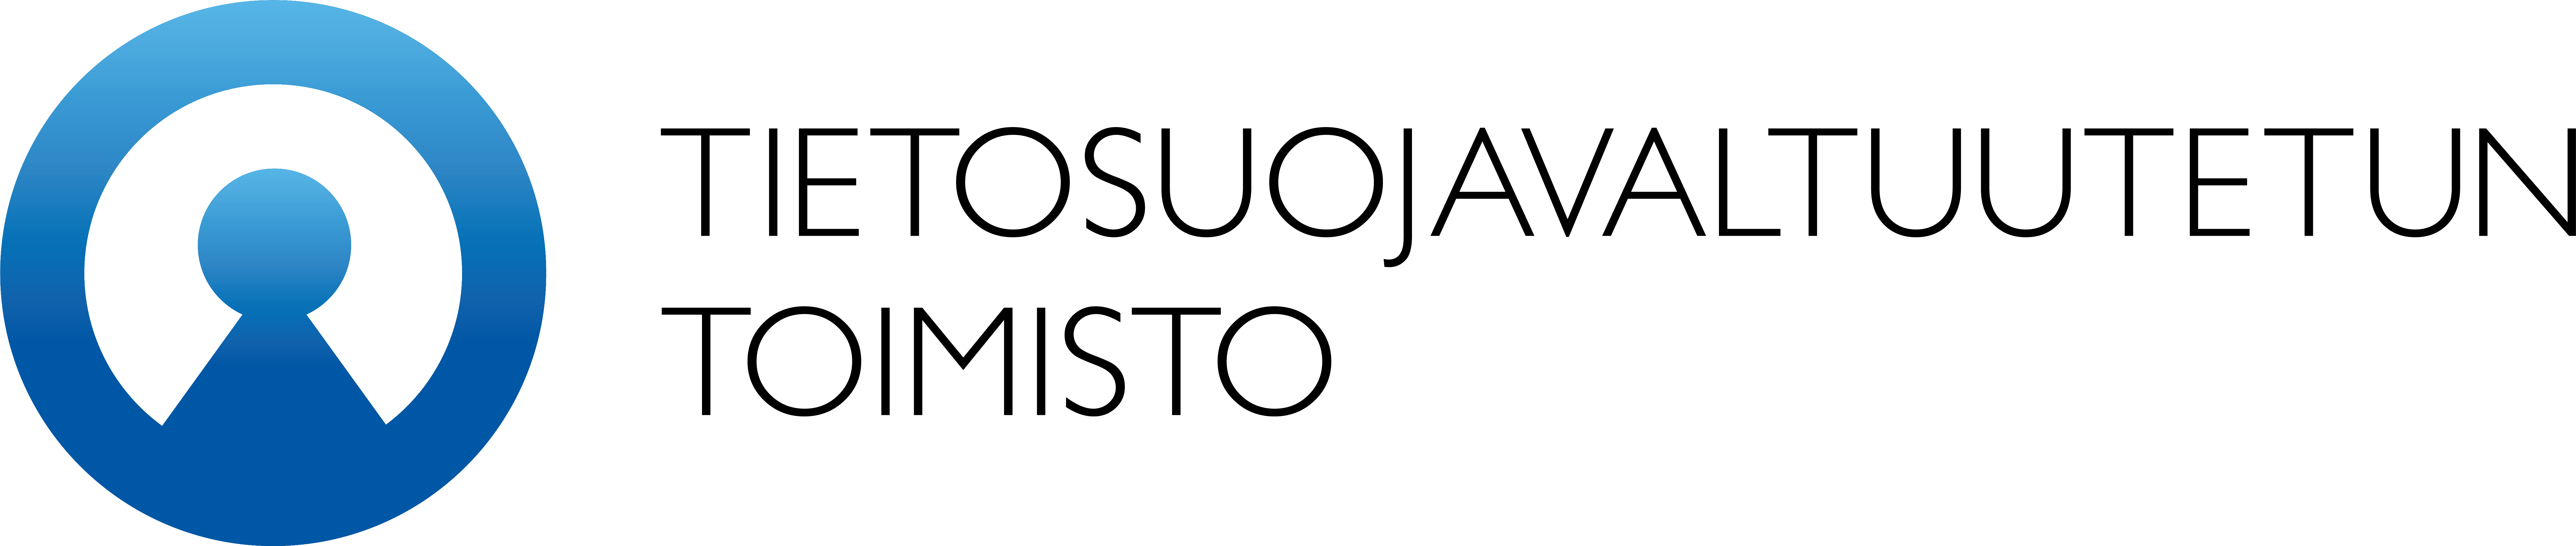 Tietosuojavaltuutetun toimiston logo